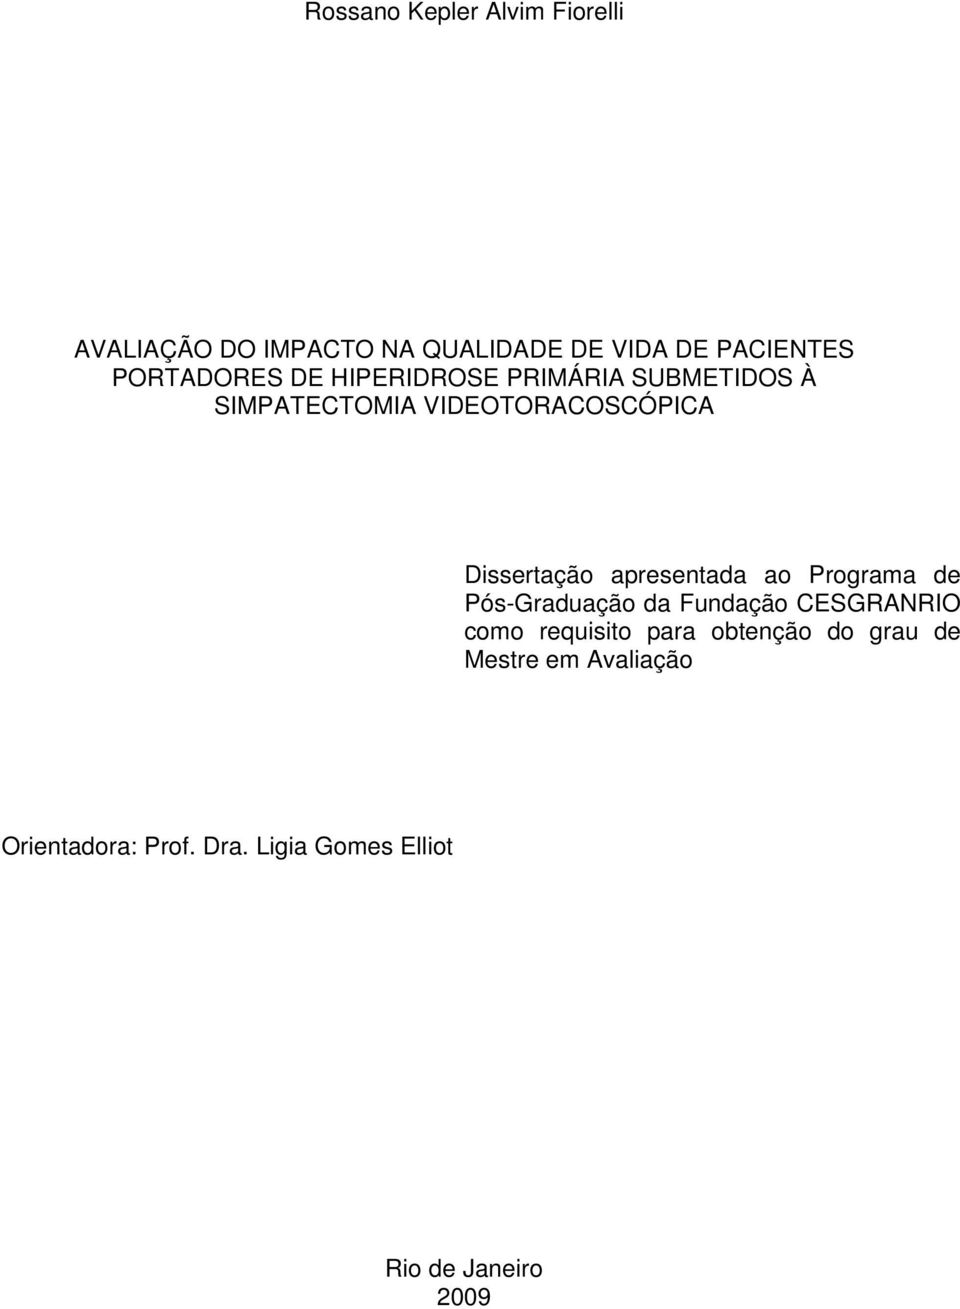 Dissertação apresentada ao Programa de Pós-Graduação da Fundação CESGRANRIO como requisito